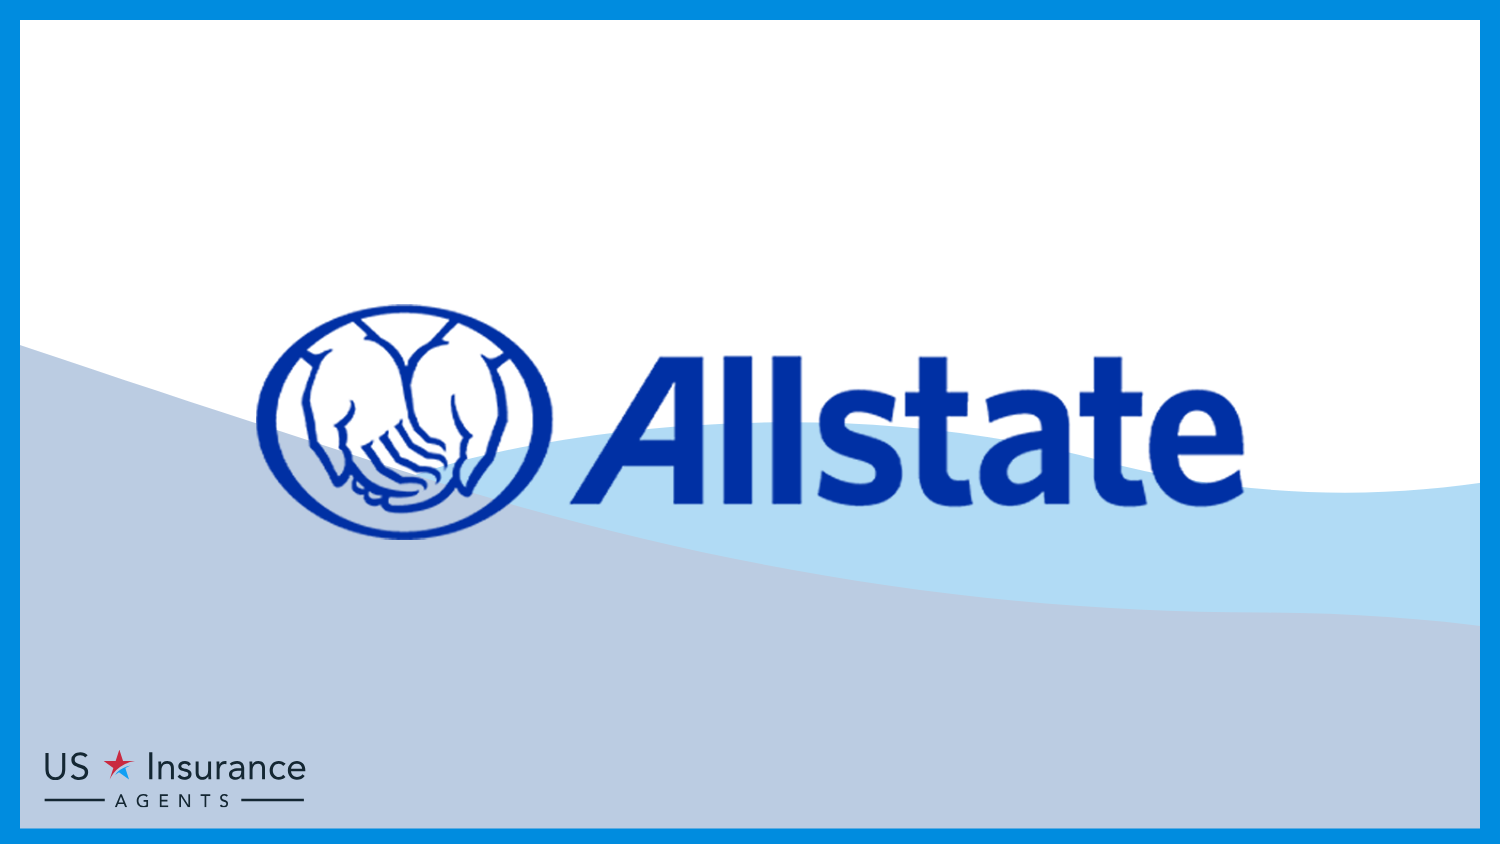 Allstate: Best Business Insurance for Lemonade Stand